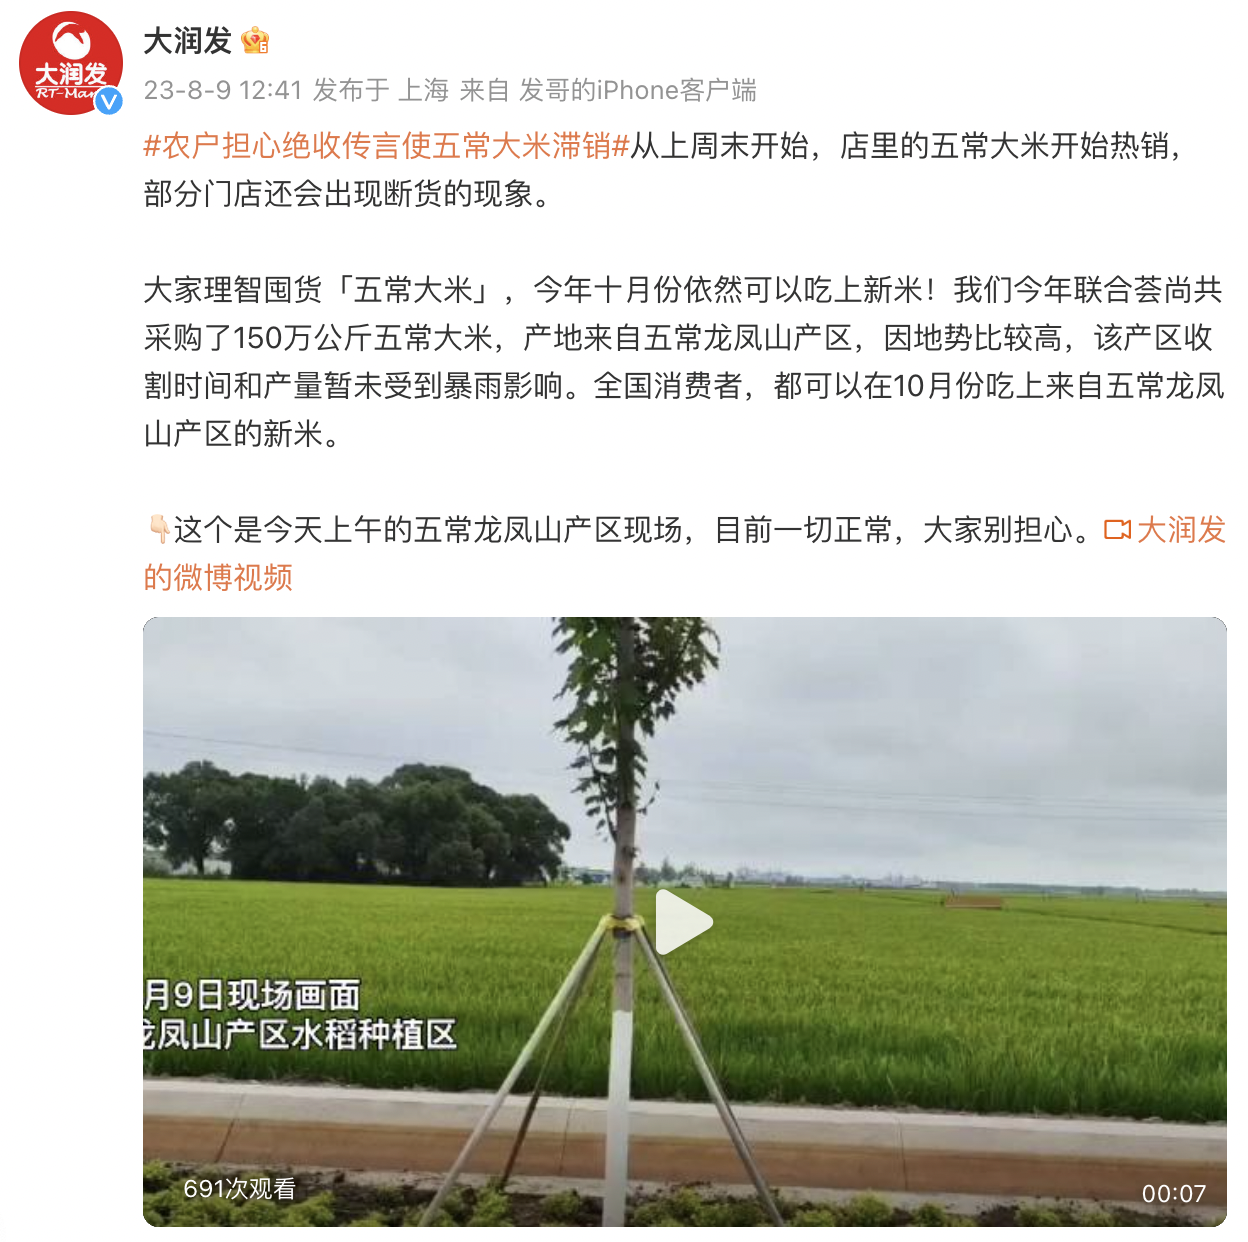 大润发联合荟尚采购150万公斤五常大米，今年十月能吃上新米